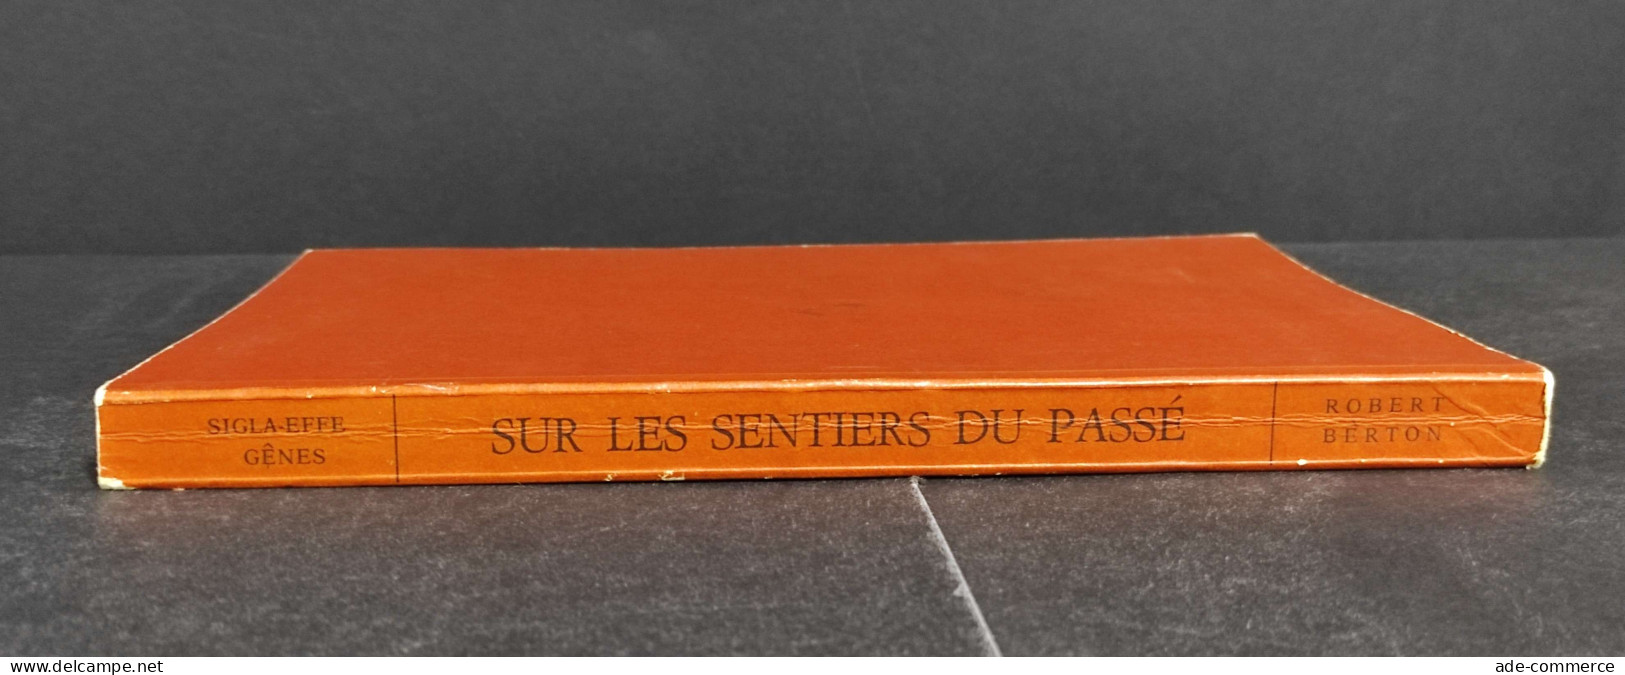 Les Cheminees Du Val D'Aoste - R. Berton - 1961 - Arts, Antiquity